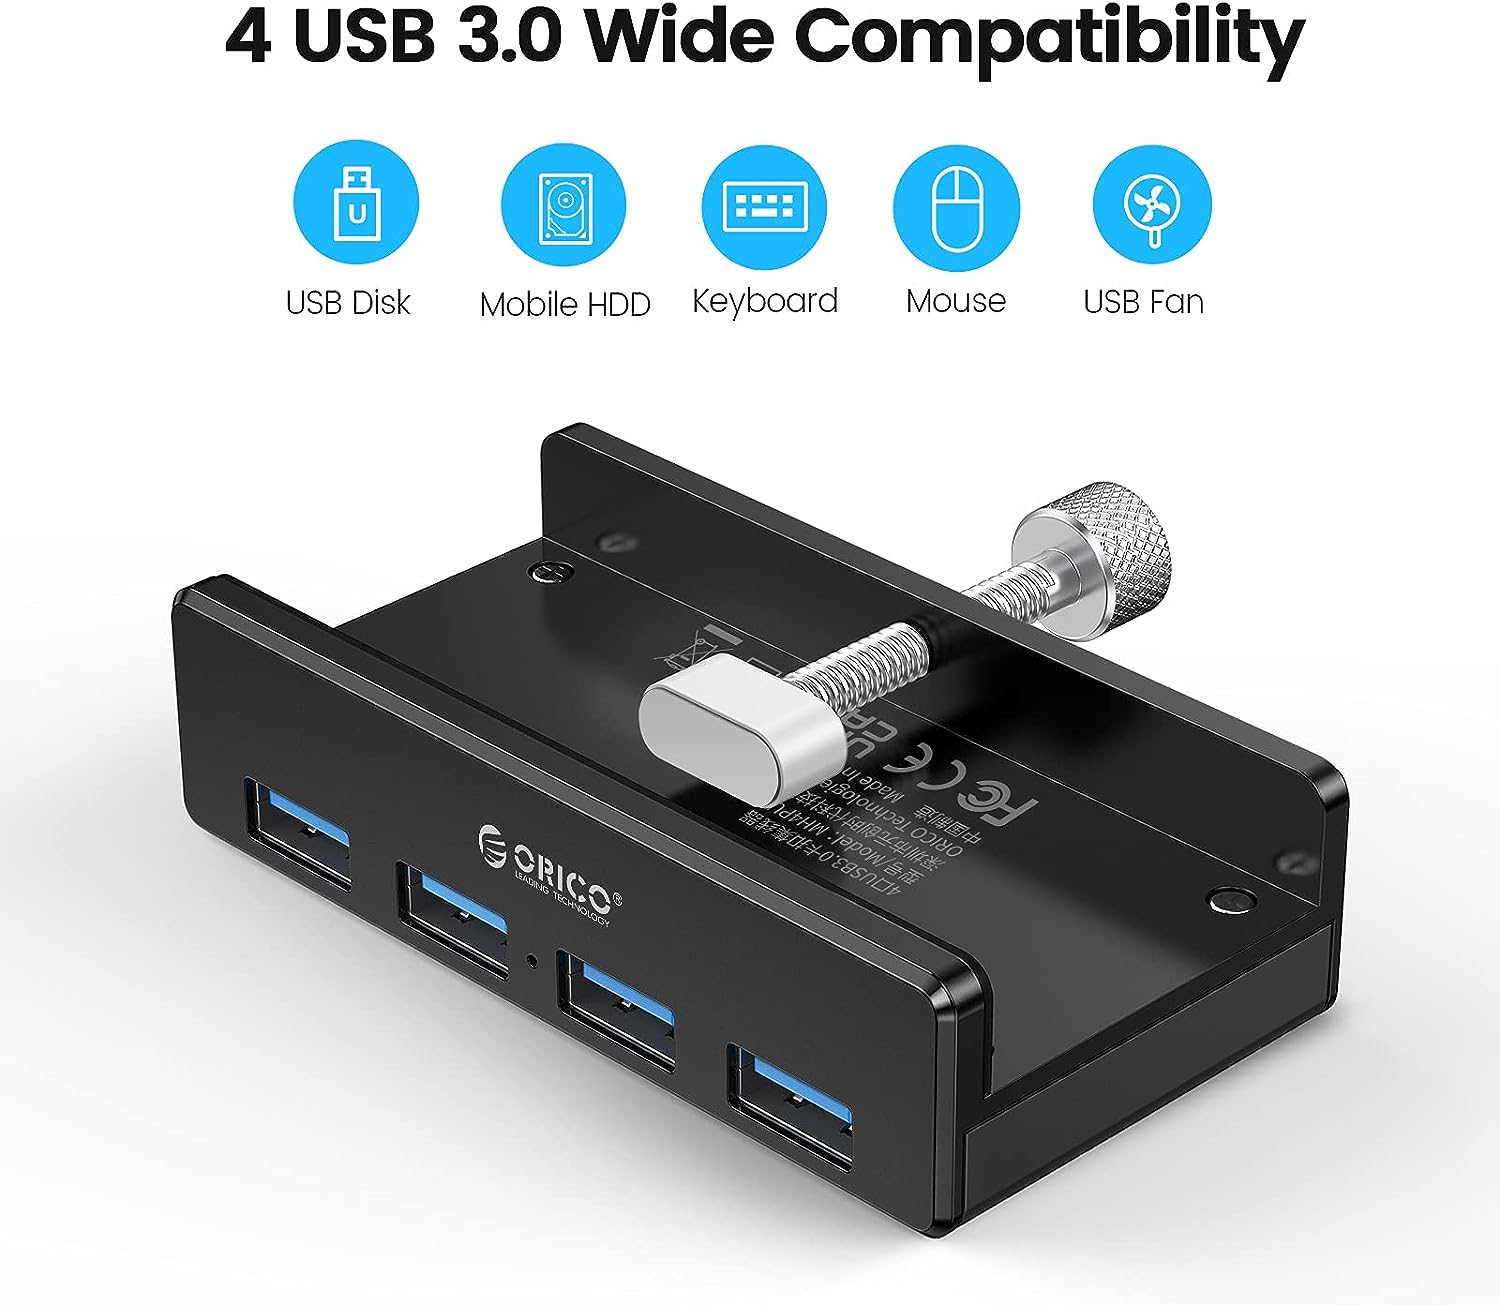 هاب 4 پورت اوریکو تایپ C مدل ORICO USB C Hub 4 Ports USB 3.1 - ارسال 10 الی 15 روز کاری